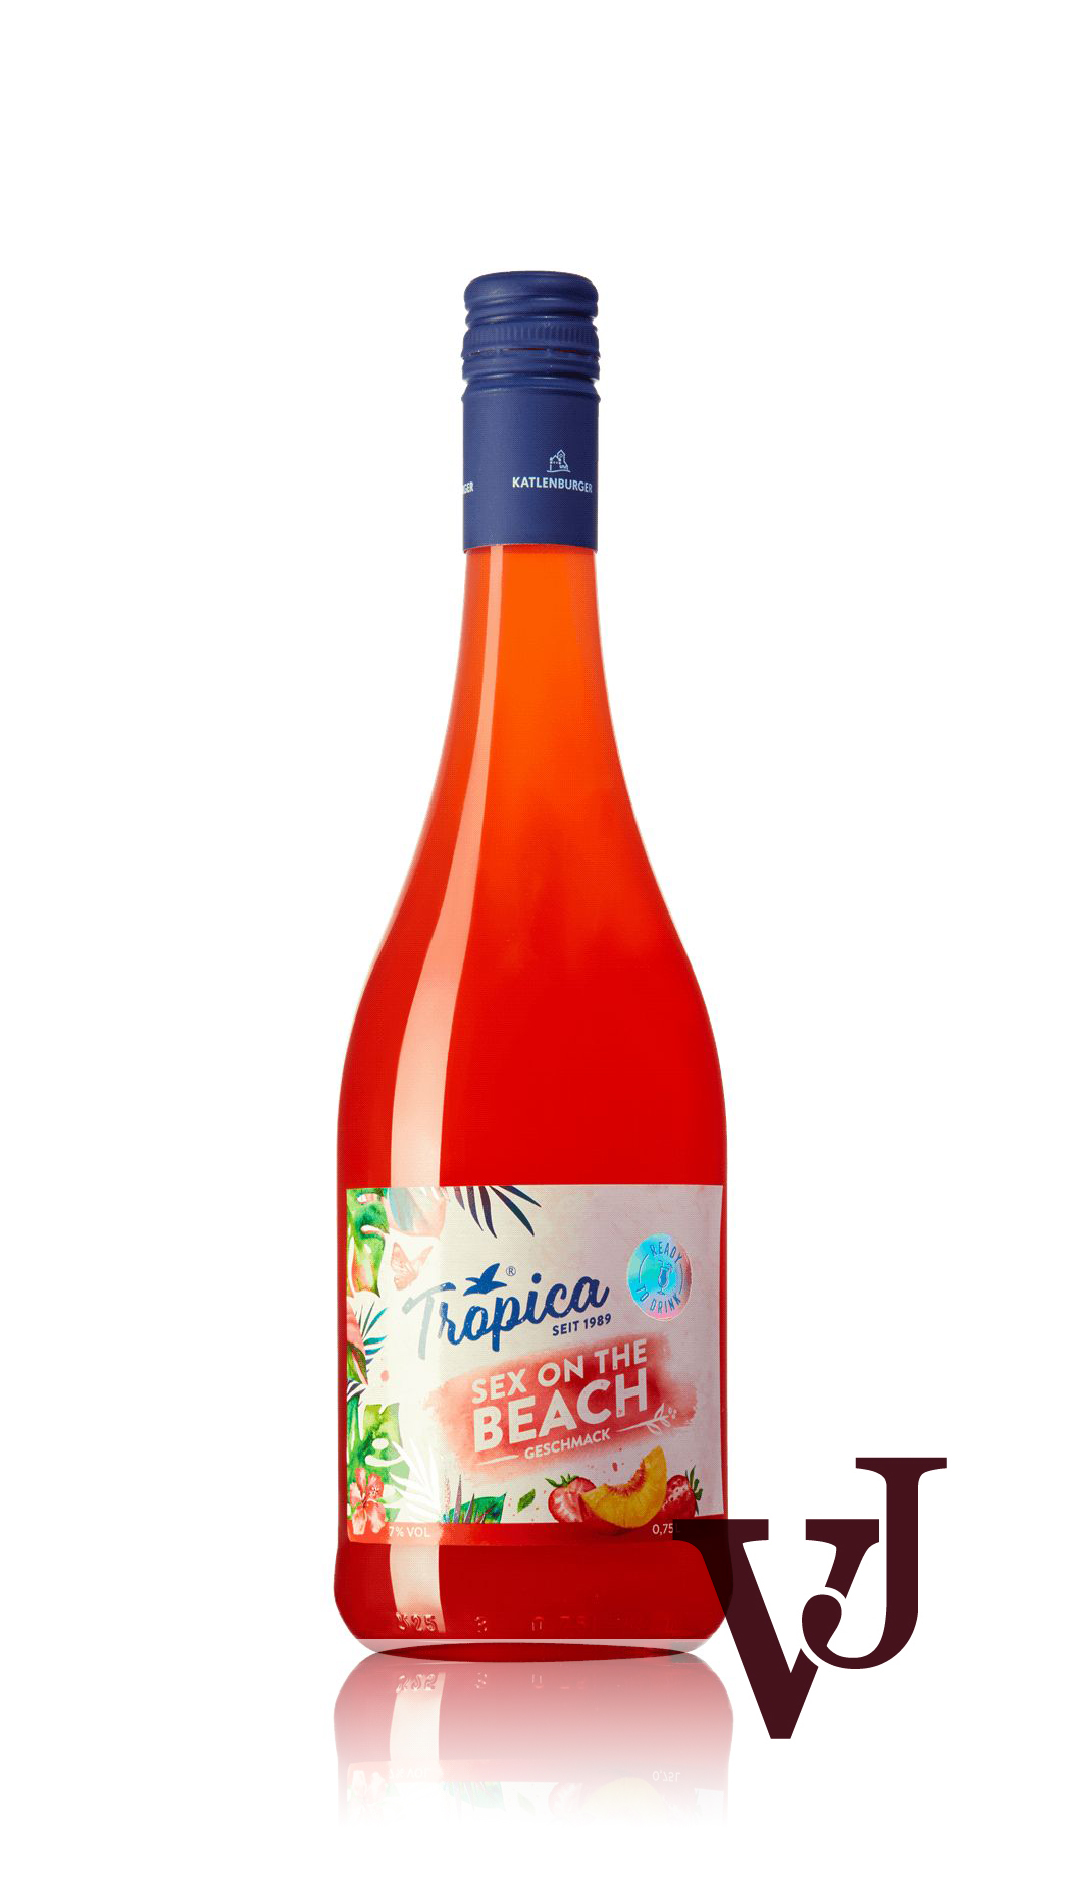 Övrigt Vin - Tropica Sex on the Beach artikel nummer 7145301 från producenten Katlenburger Kellerei från området Tyskland.